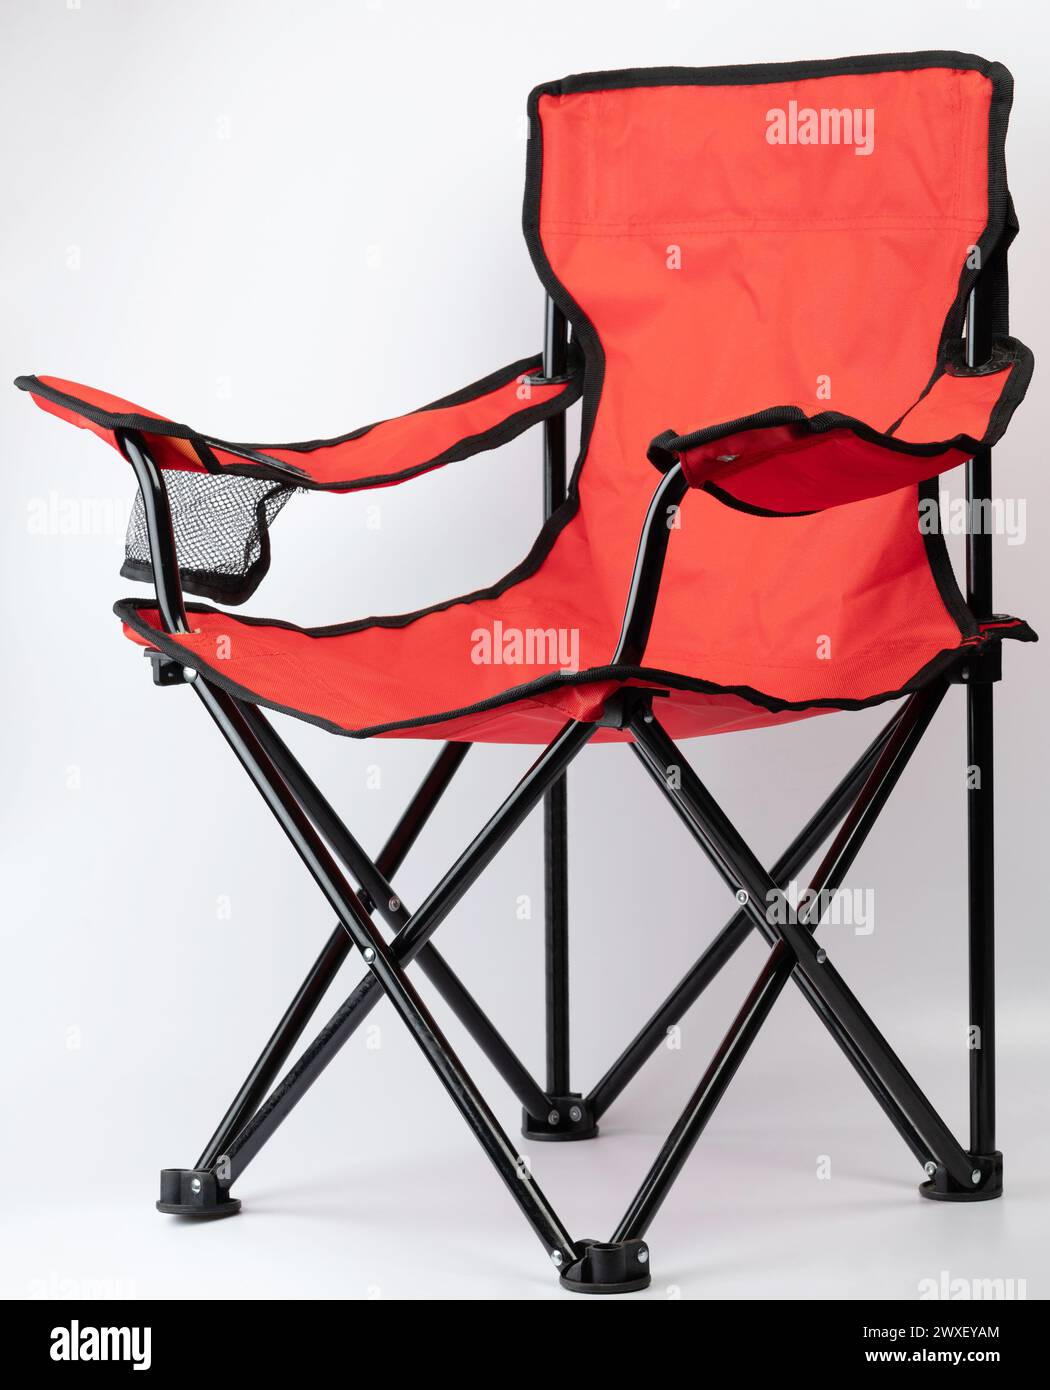 Vue en perspective de chaise pliante de couleur orange isolée sur fond blanc de studio Banque D'Images